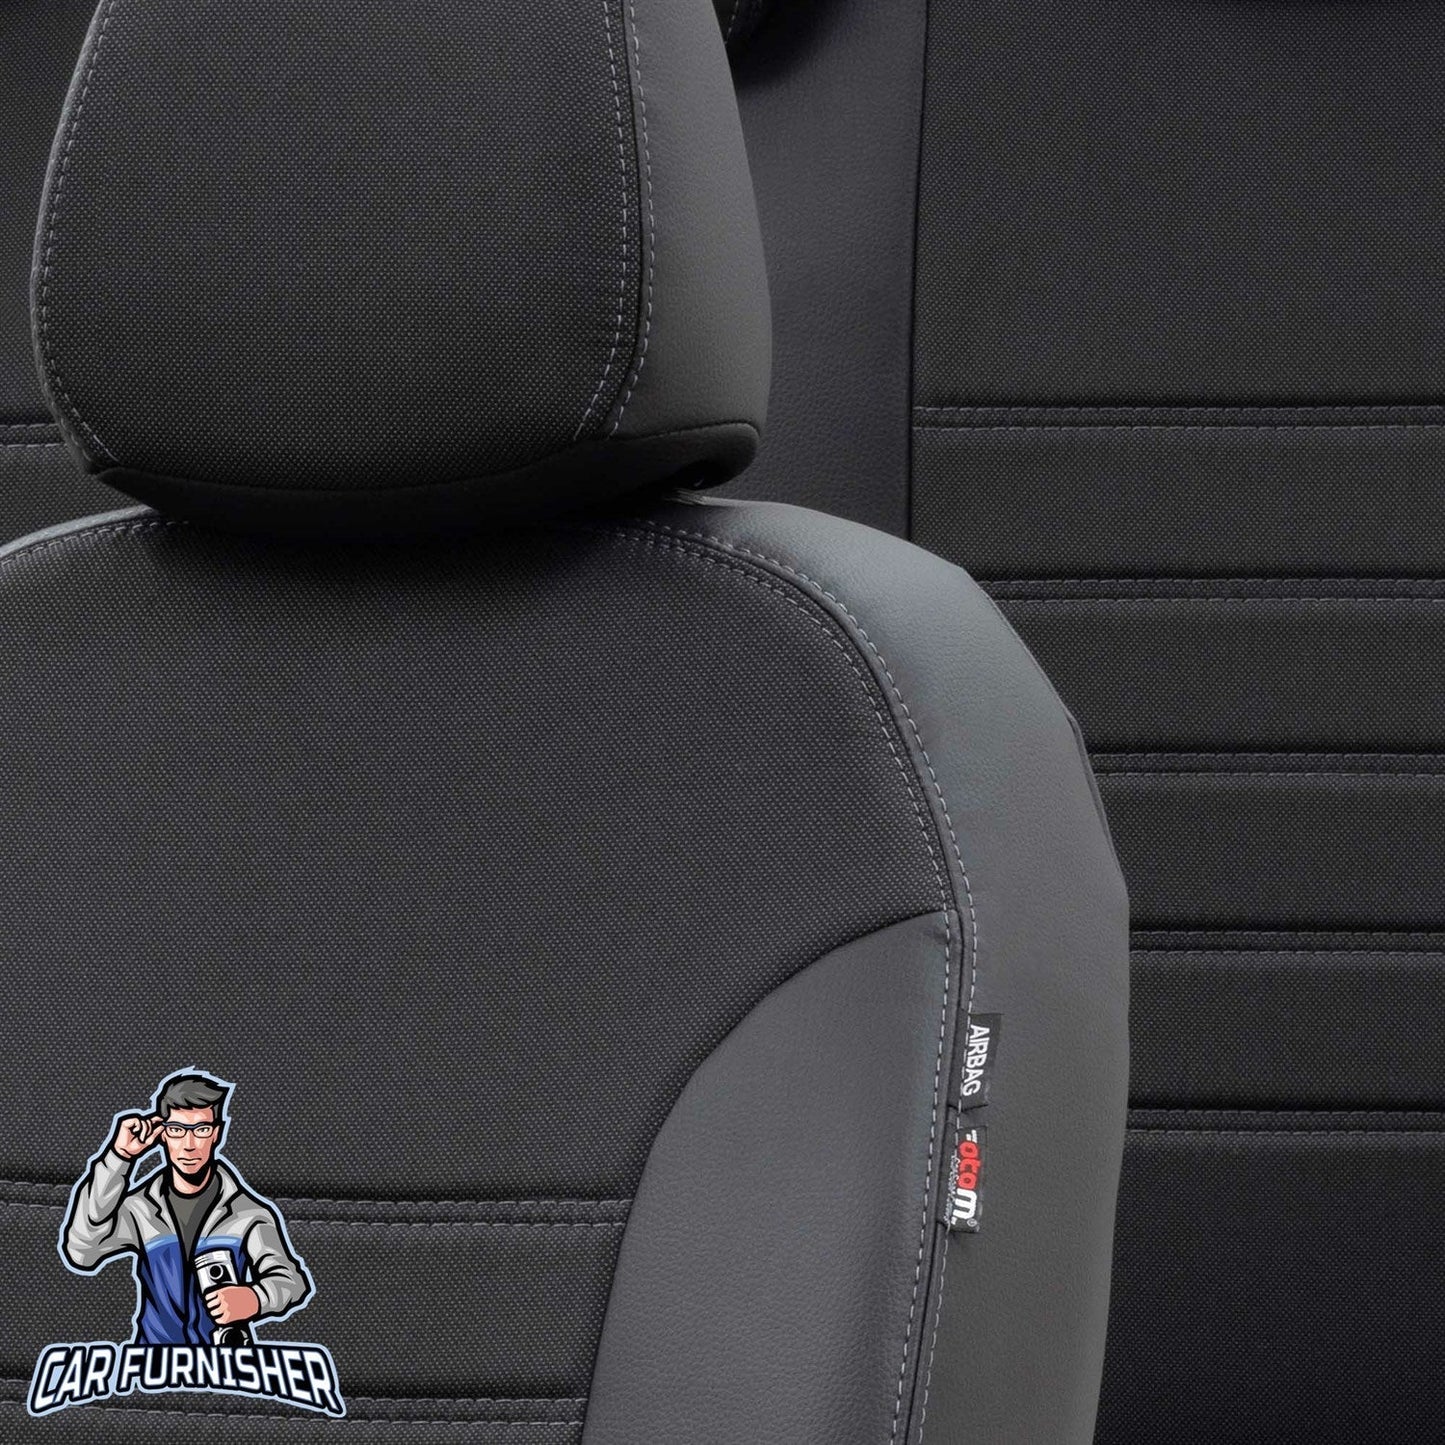 Daewoo Tacuma Seat Covers Paris Leather & Jacquard Design Black Leather & Jacquard Fabric